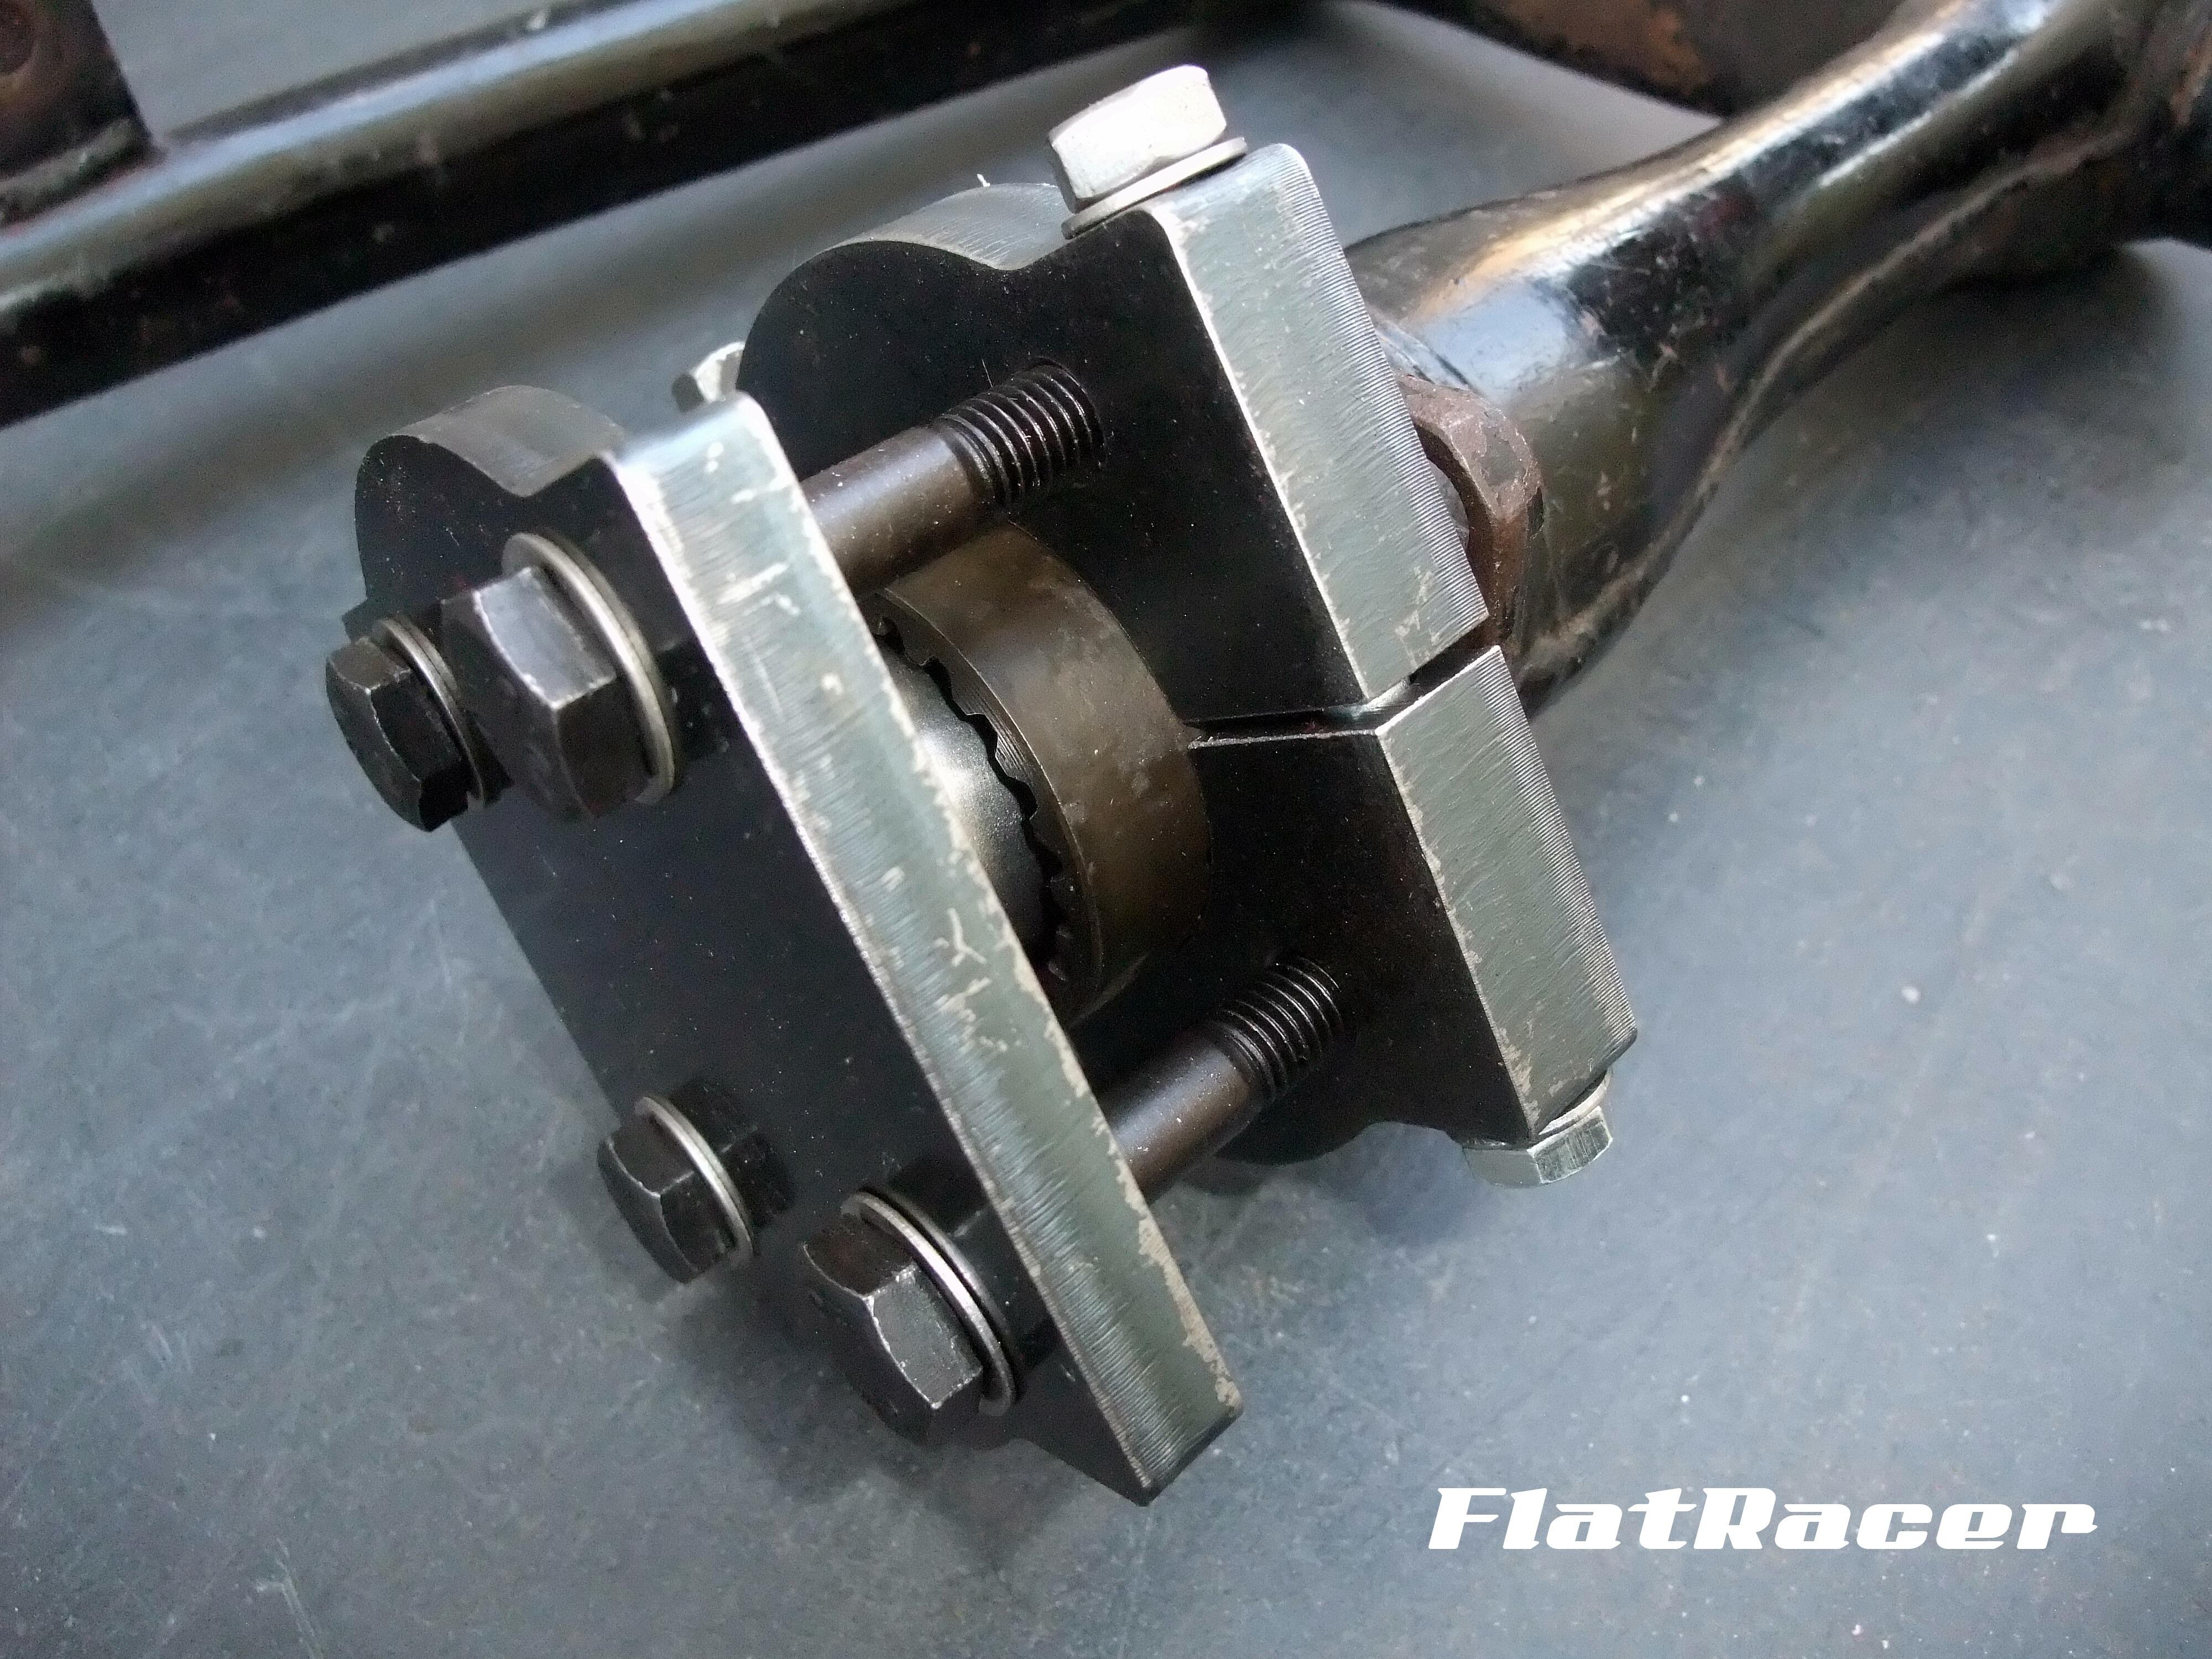 FlatRacer BMW R2v Airhead Boxer (69-78) Driveshaft Compressor Tool - 26-1-650